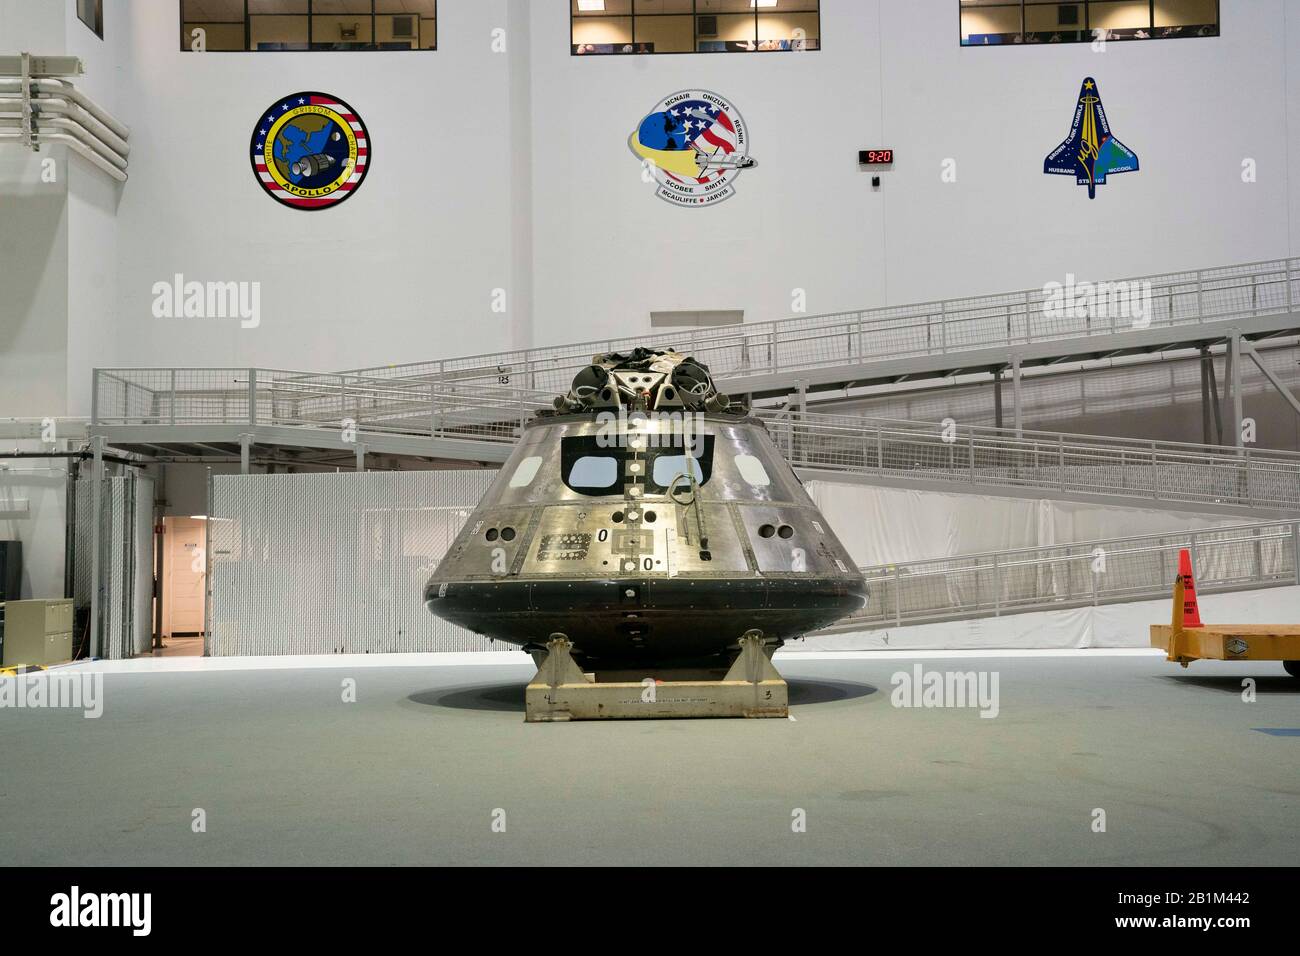 Un Veicolo Orion Multi-Purpose Crew, l'ultima generazione di veicoli spaziali della NASA, progettato per l'esplorazione dello spazio profondo, si trova presso il Neutral Gallancy Lab (NBL) di Houston per l'addestramento. Foto Stock